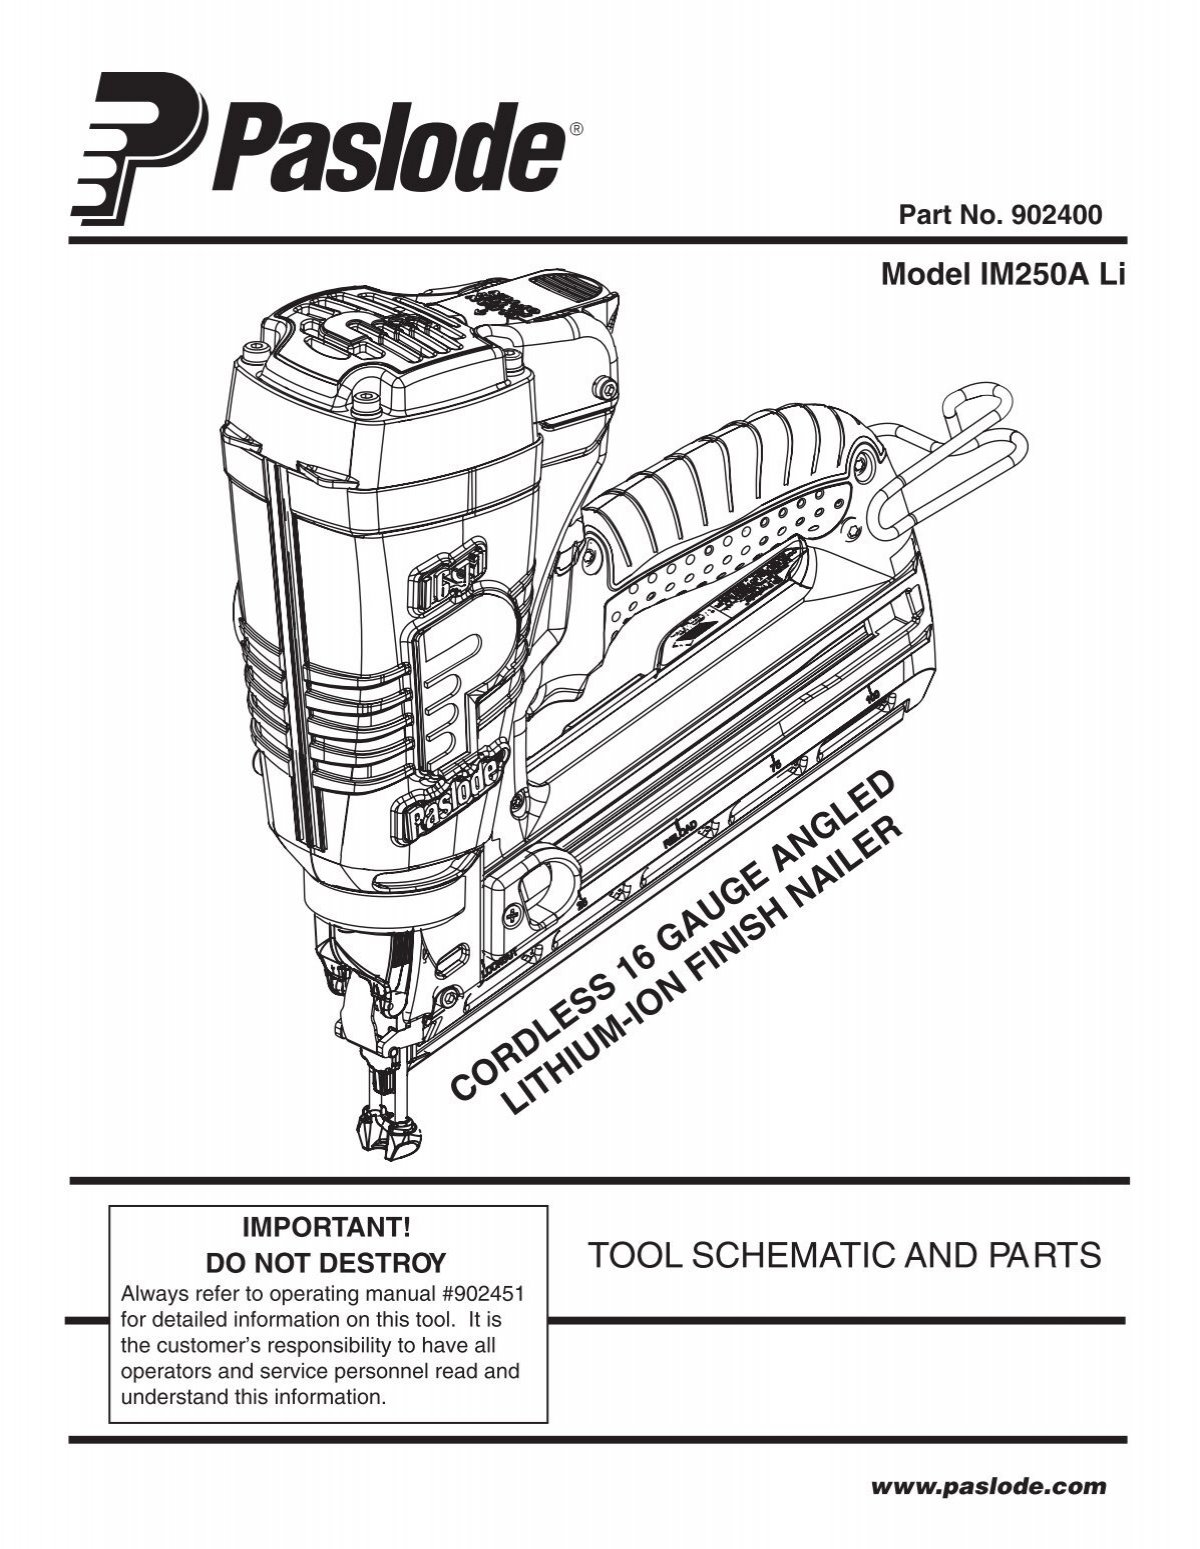 Maintenance | Paslode F350-S PowerMaster Plus 30 Framing Nailer User Manual  | Page 12 / 32